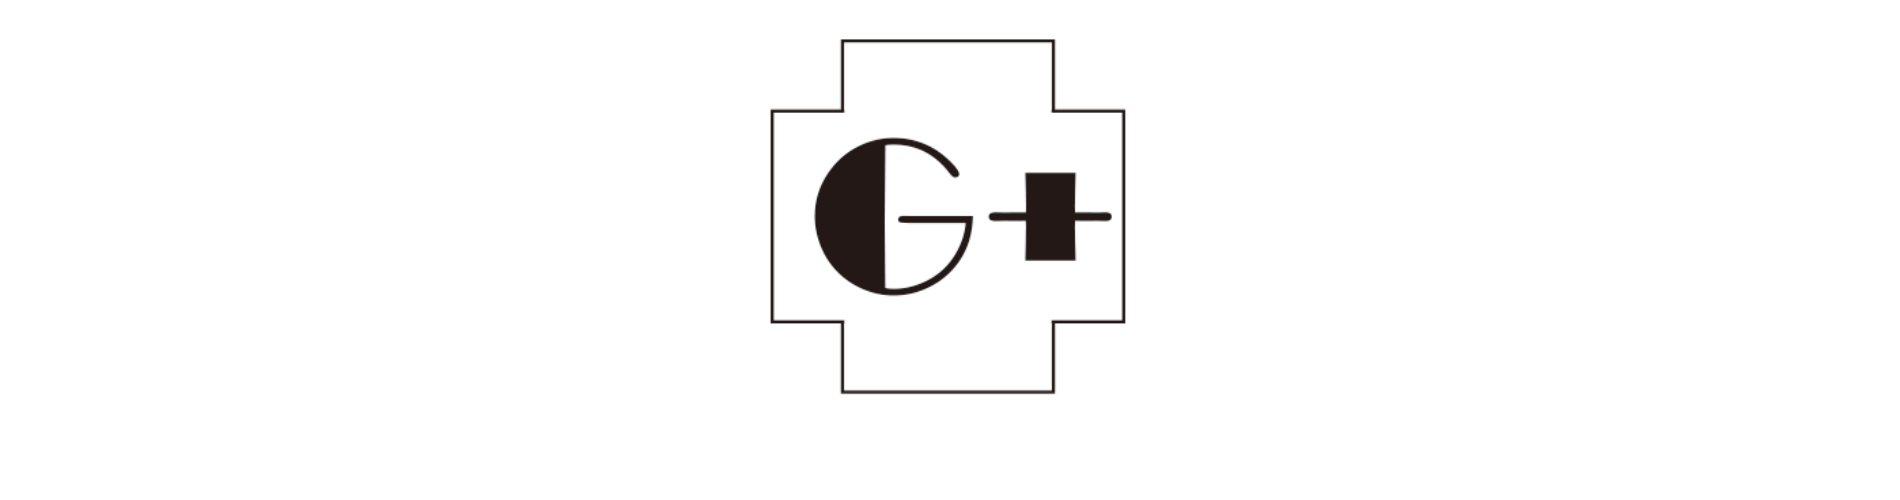 GOTANDA G+